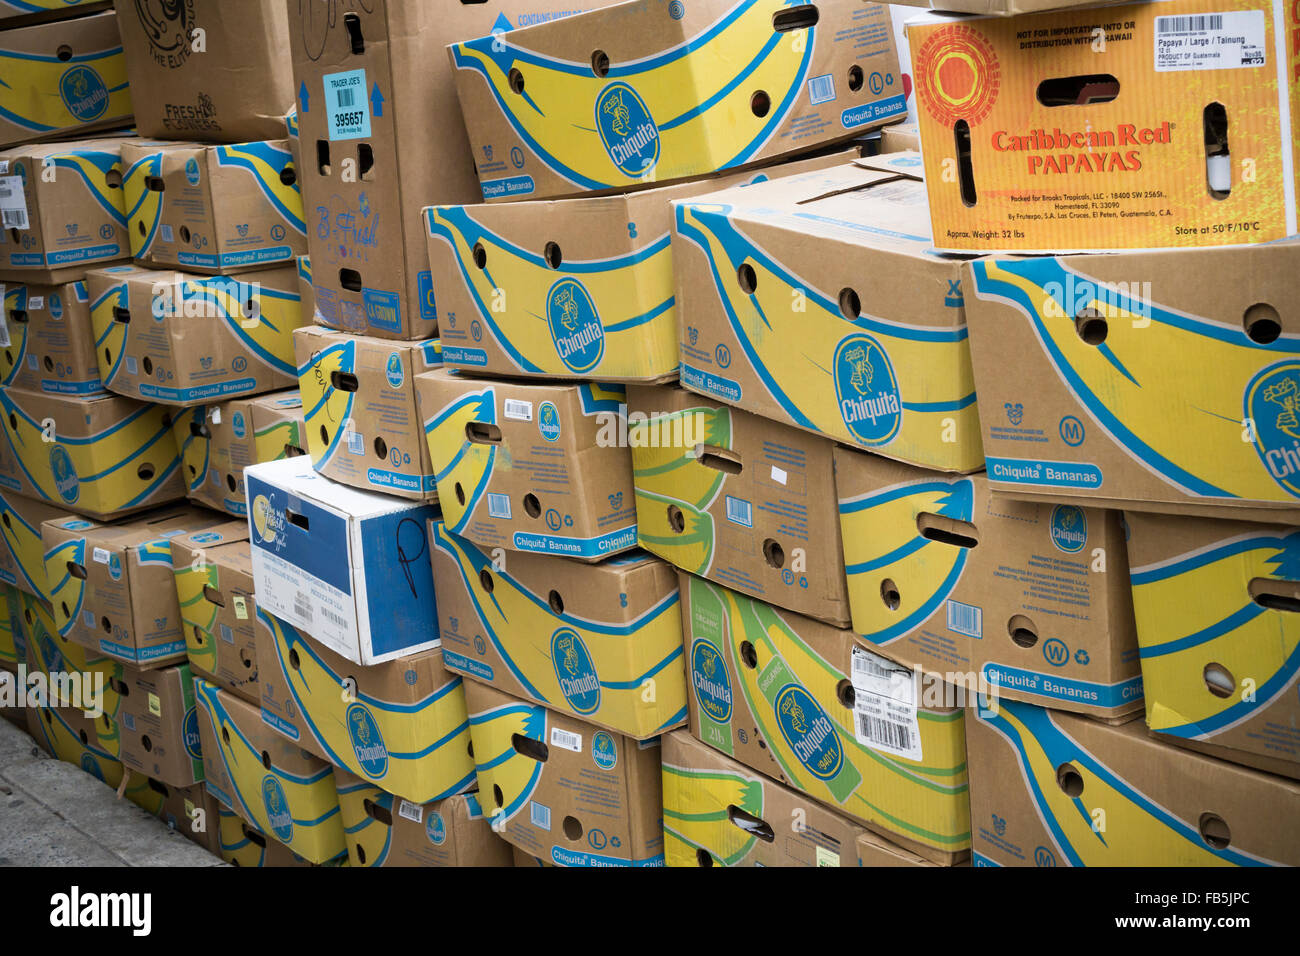 Cajas de cartón, en su mayoría de marca Chiquita bananas, pendiente de  recogida y reciclaje en Nueva York el viernes, 8 de enero de 2016. (©  Richard B. Levine Fotografía de stock - Alamy